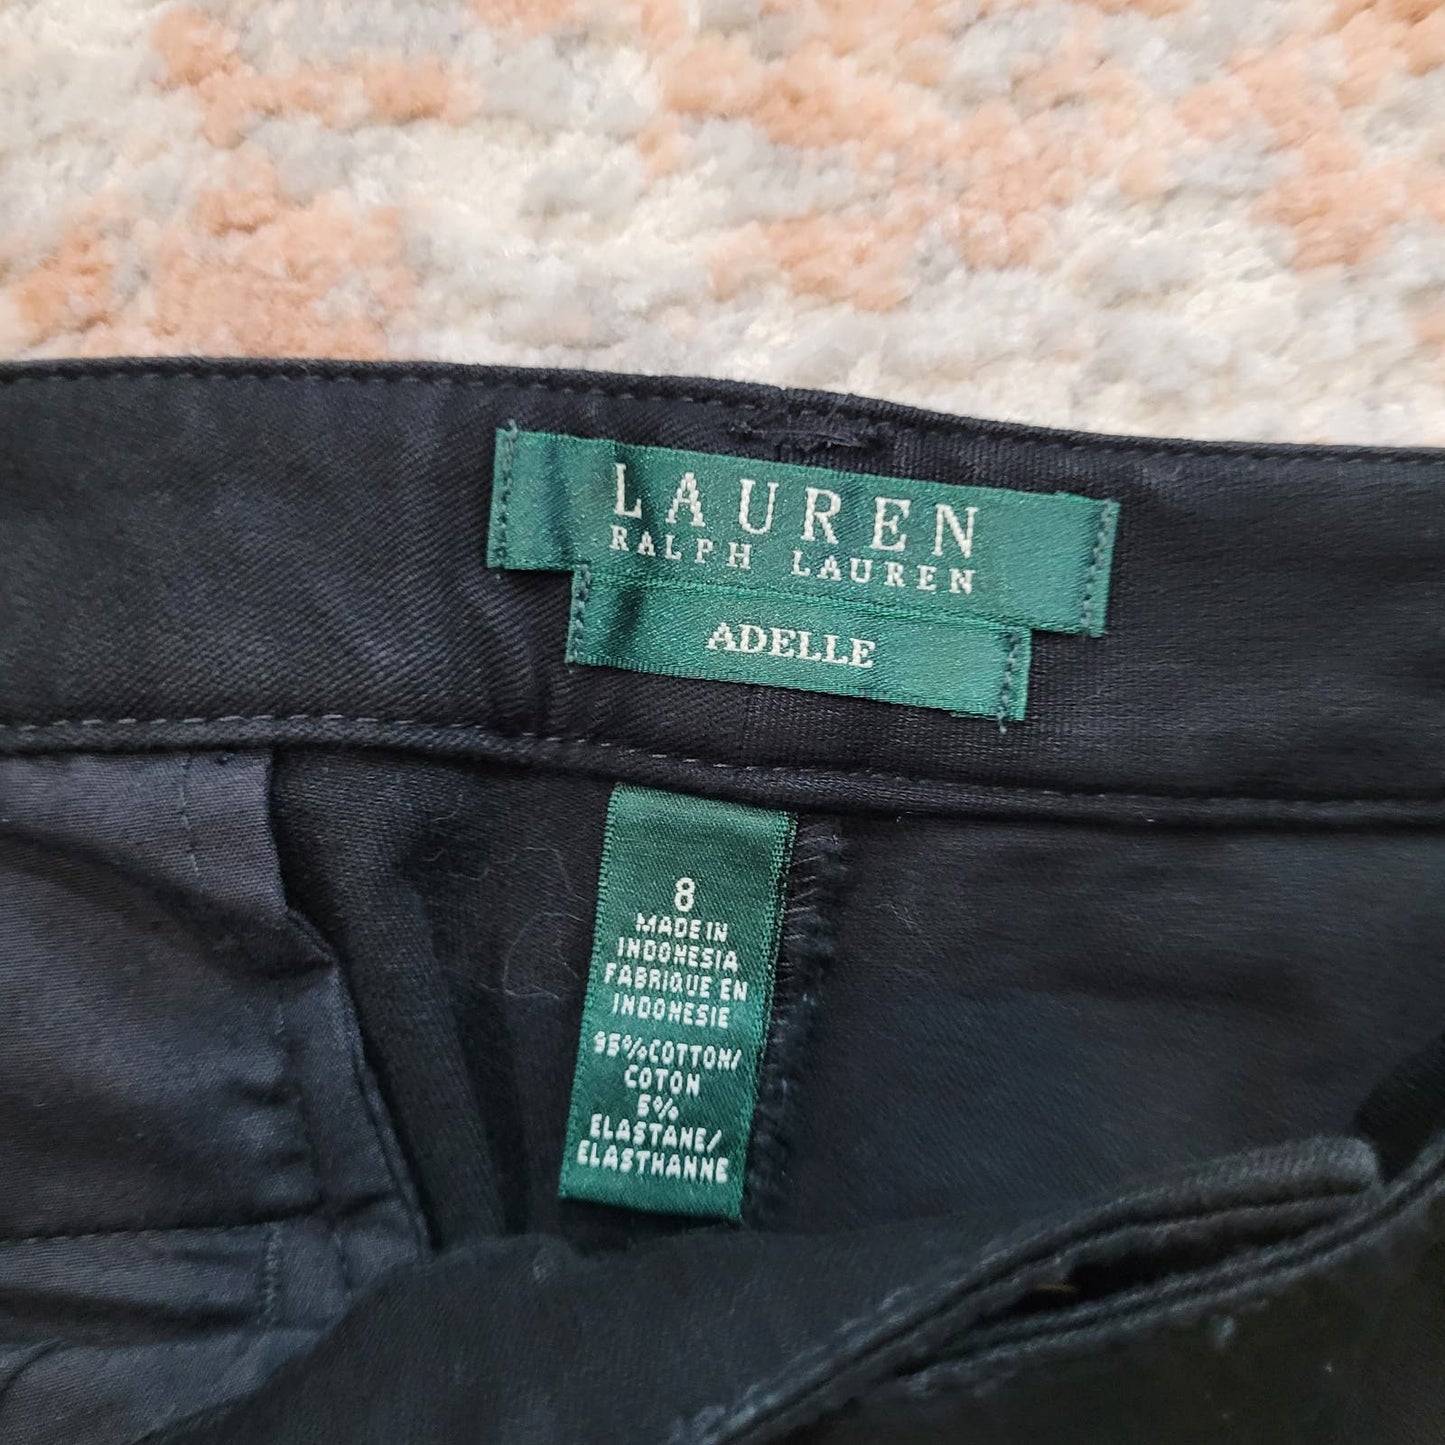 Lauren Ralph Lauren Adelle Black Shorts - Size 8